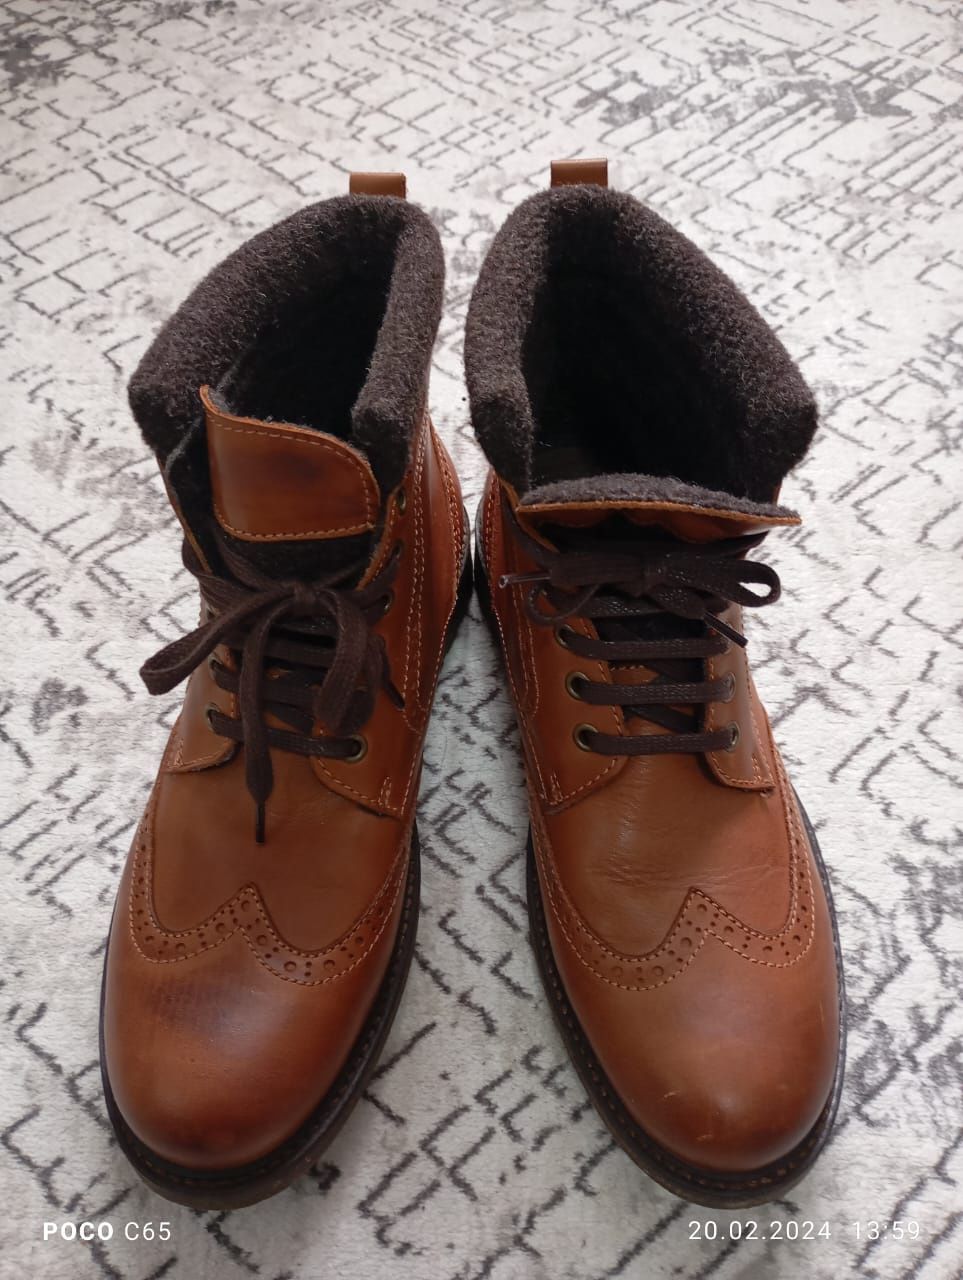 Мужские ботинки демисезонные, внутри флиз, цвет коричневый, размер 42.